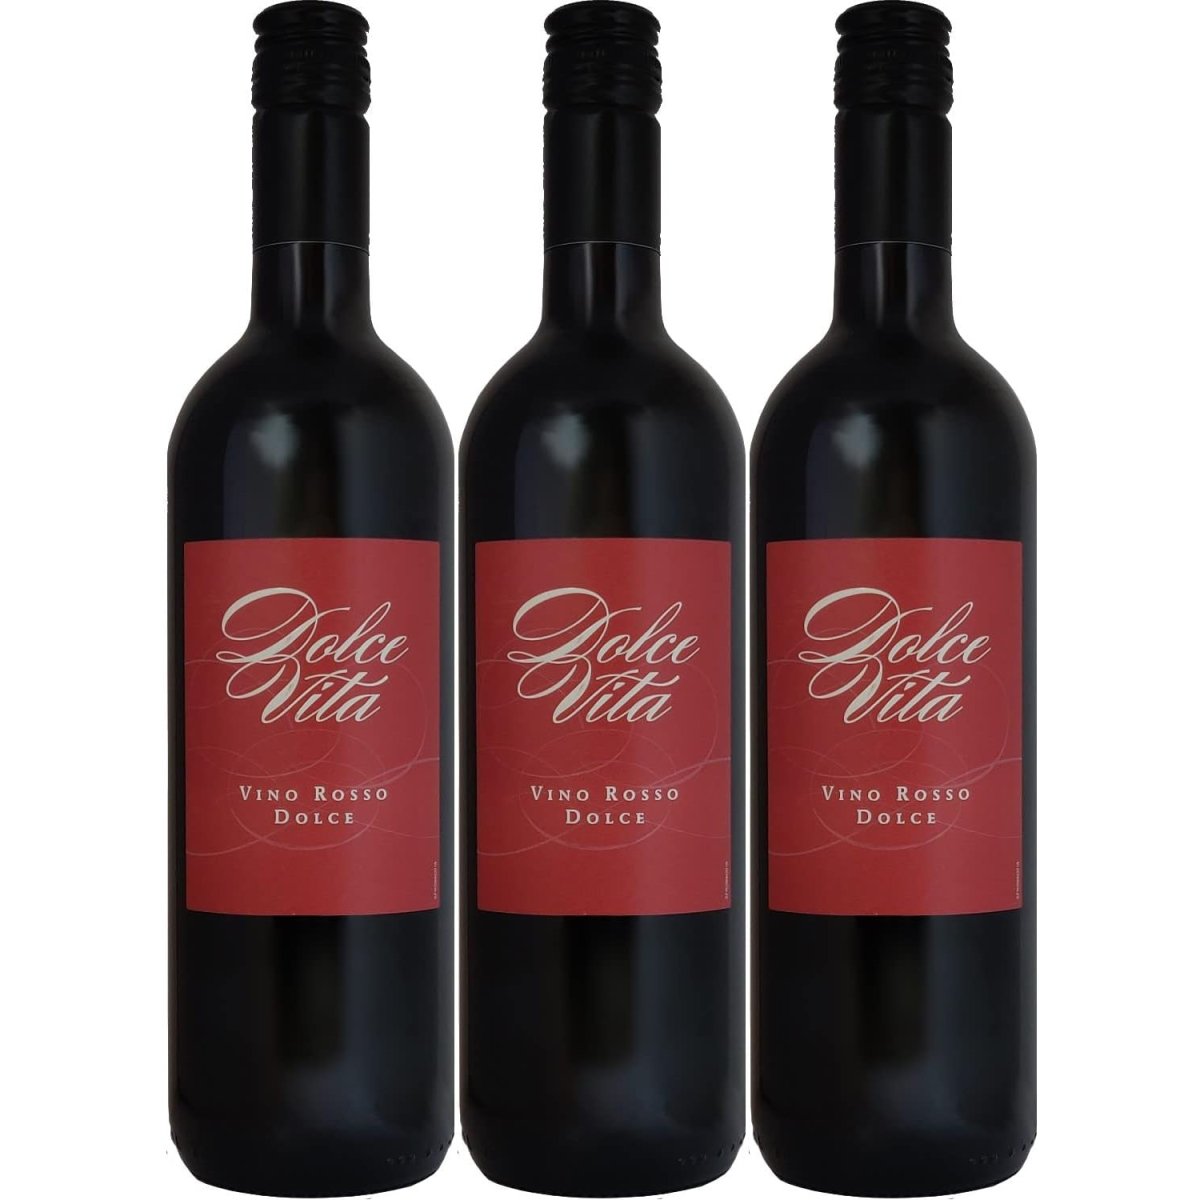 Dolce Vita Vino rosso dolce Rotwein Wein süß Italien (3 x 0,75l) – Versanel